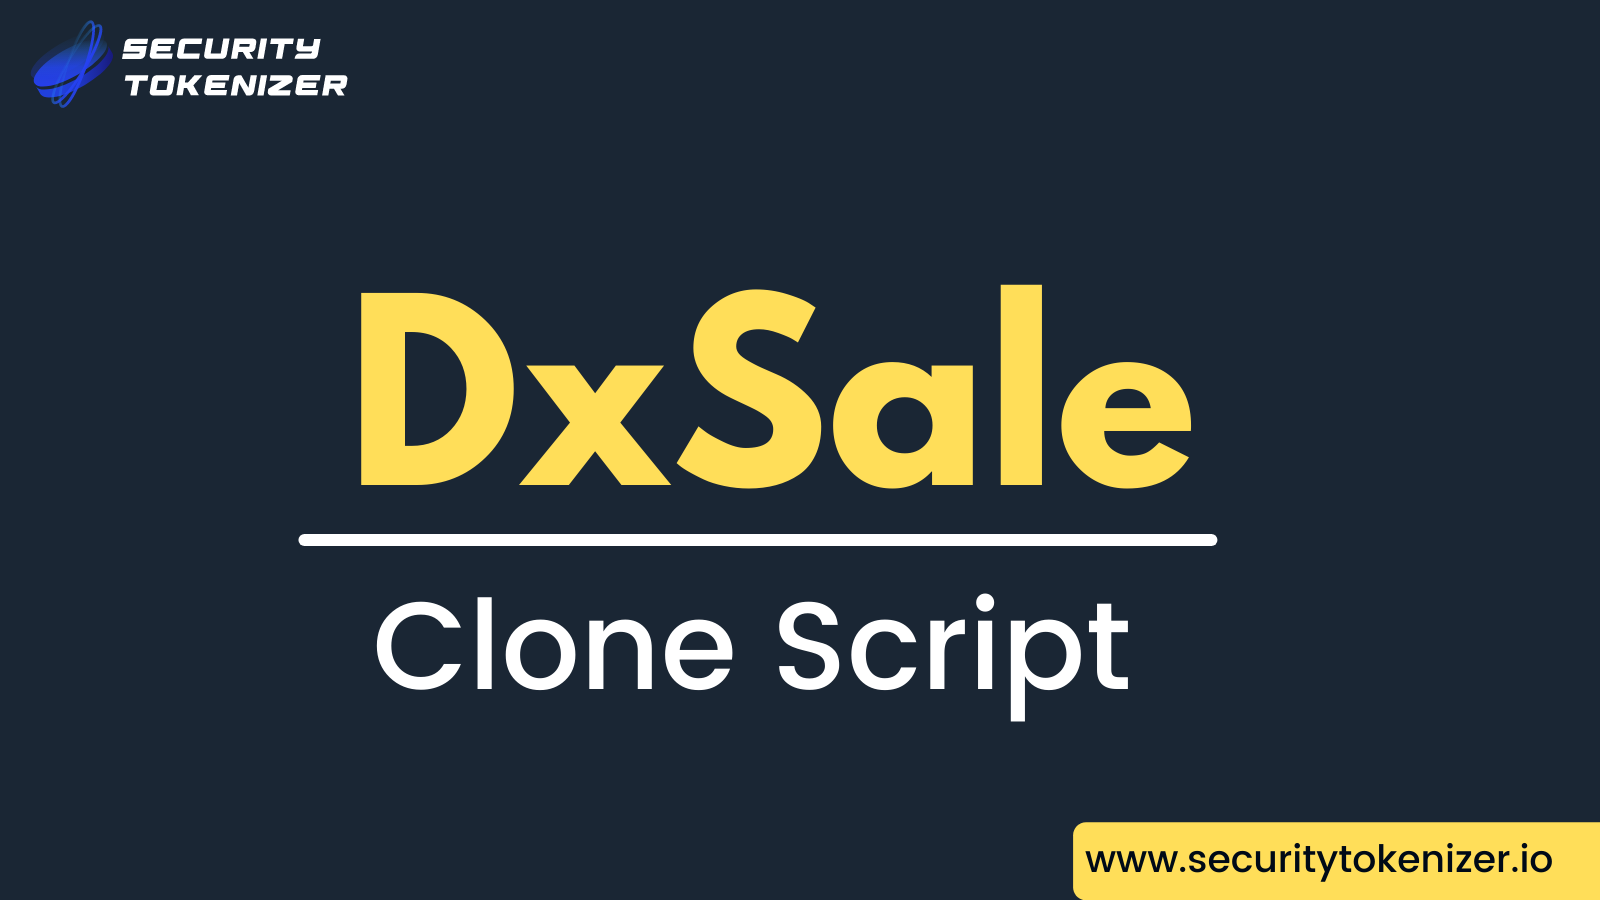 DxSale Clone Script - Launch Your Own Token Presale Platform Like DxSale